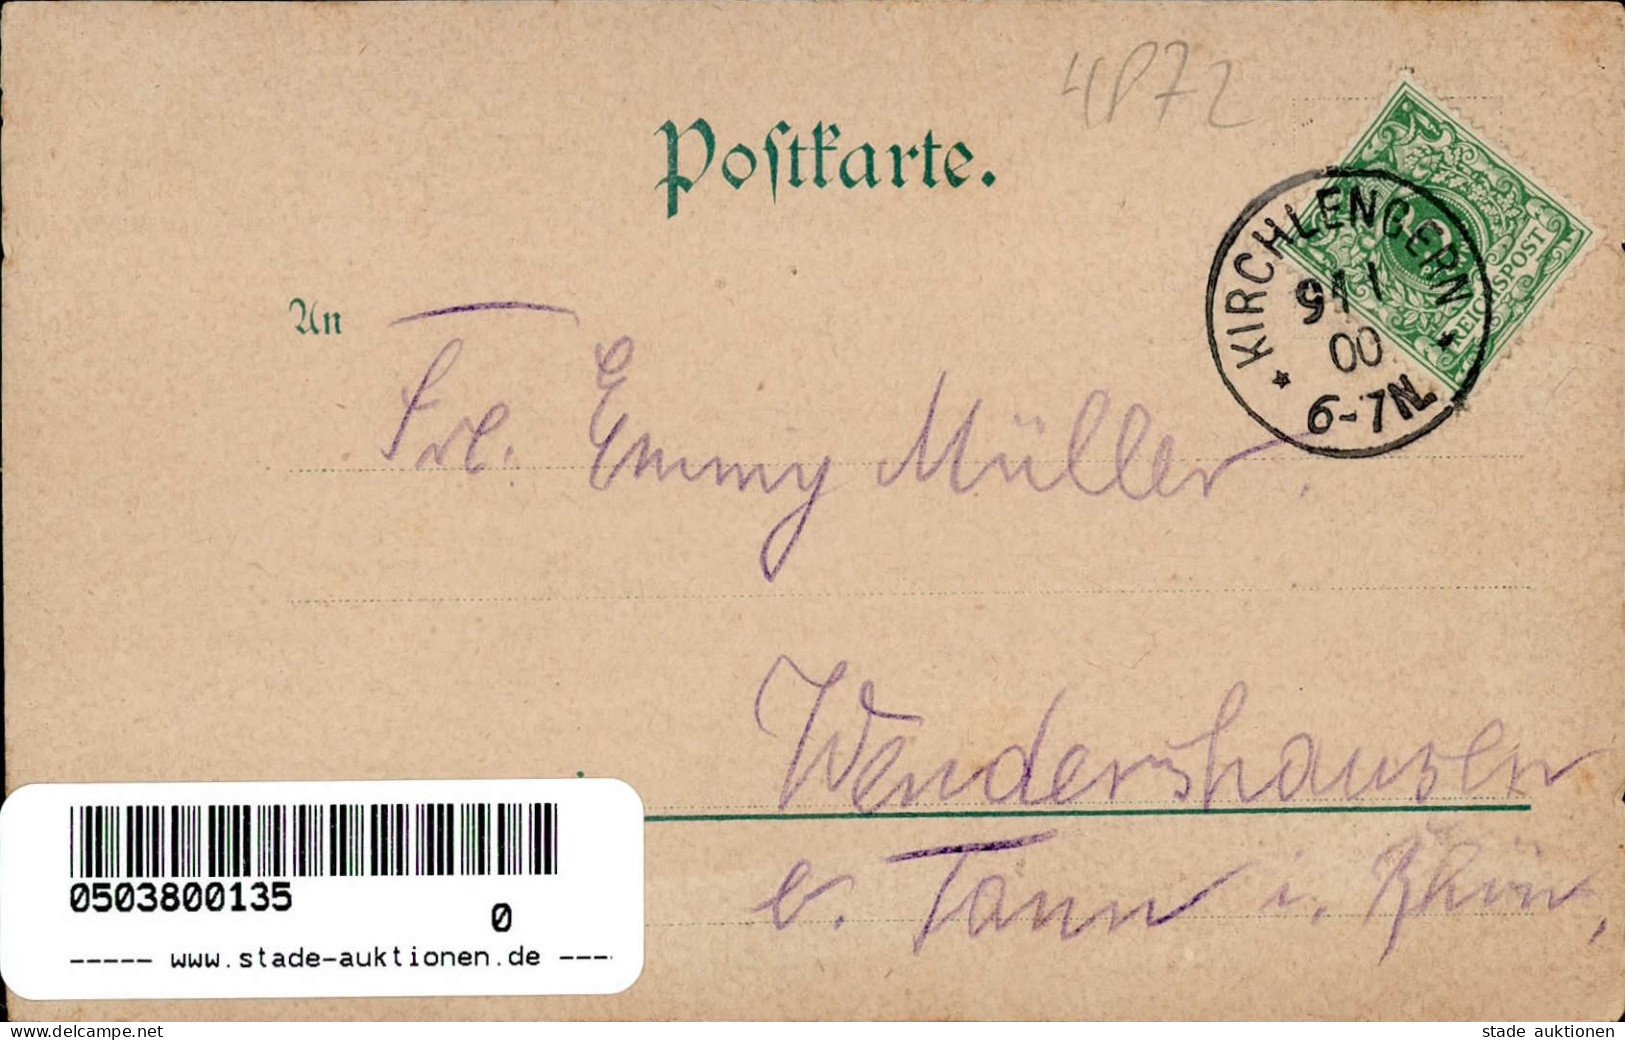 Löhne (4972) Postamt Drogen- Putz- Manufaktur- Und Kolonialwarenhandlung Gasthaus Westerhold 1900 I-II - Loehne